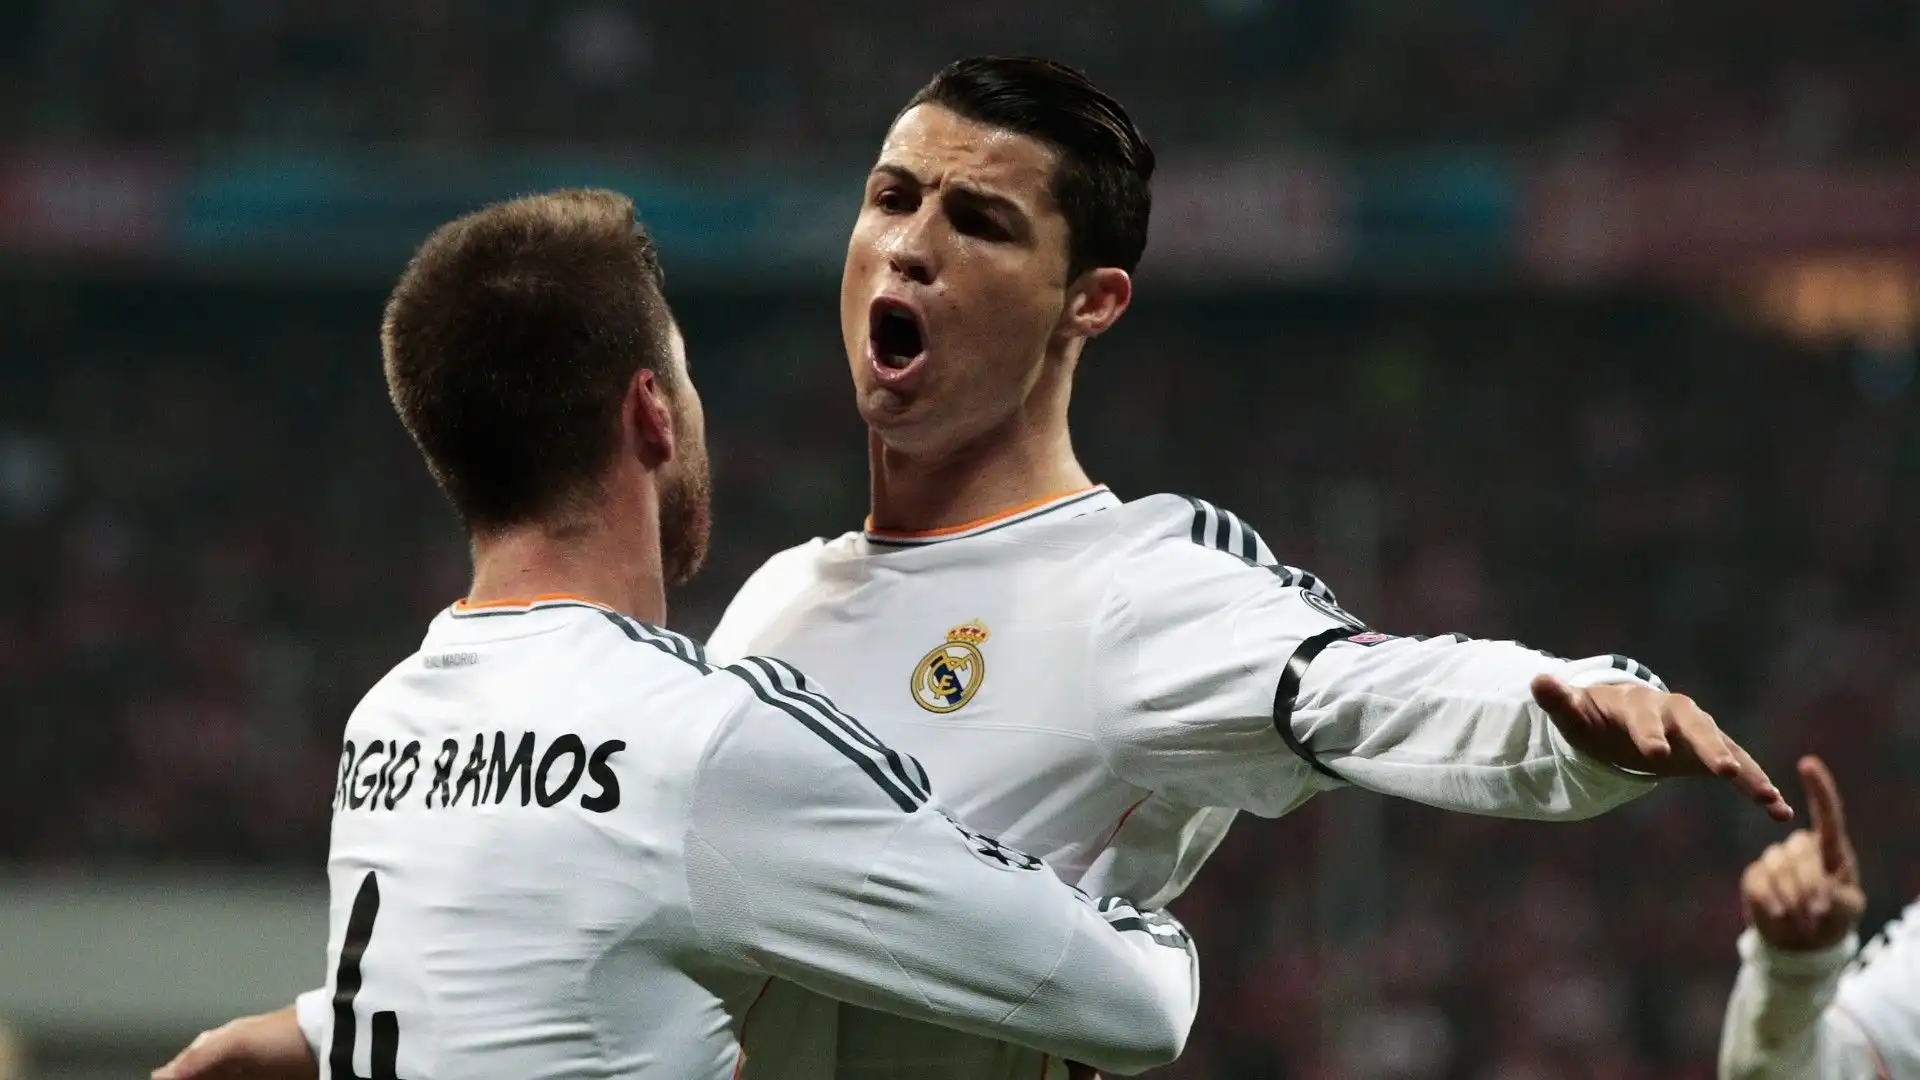 Sergio Ramos e Cristiano Ronaldo hanno giocato tantissimi anni insieme nel Real Madrid e hanno vinto molti trofei